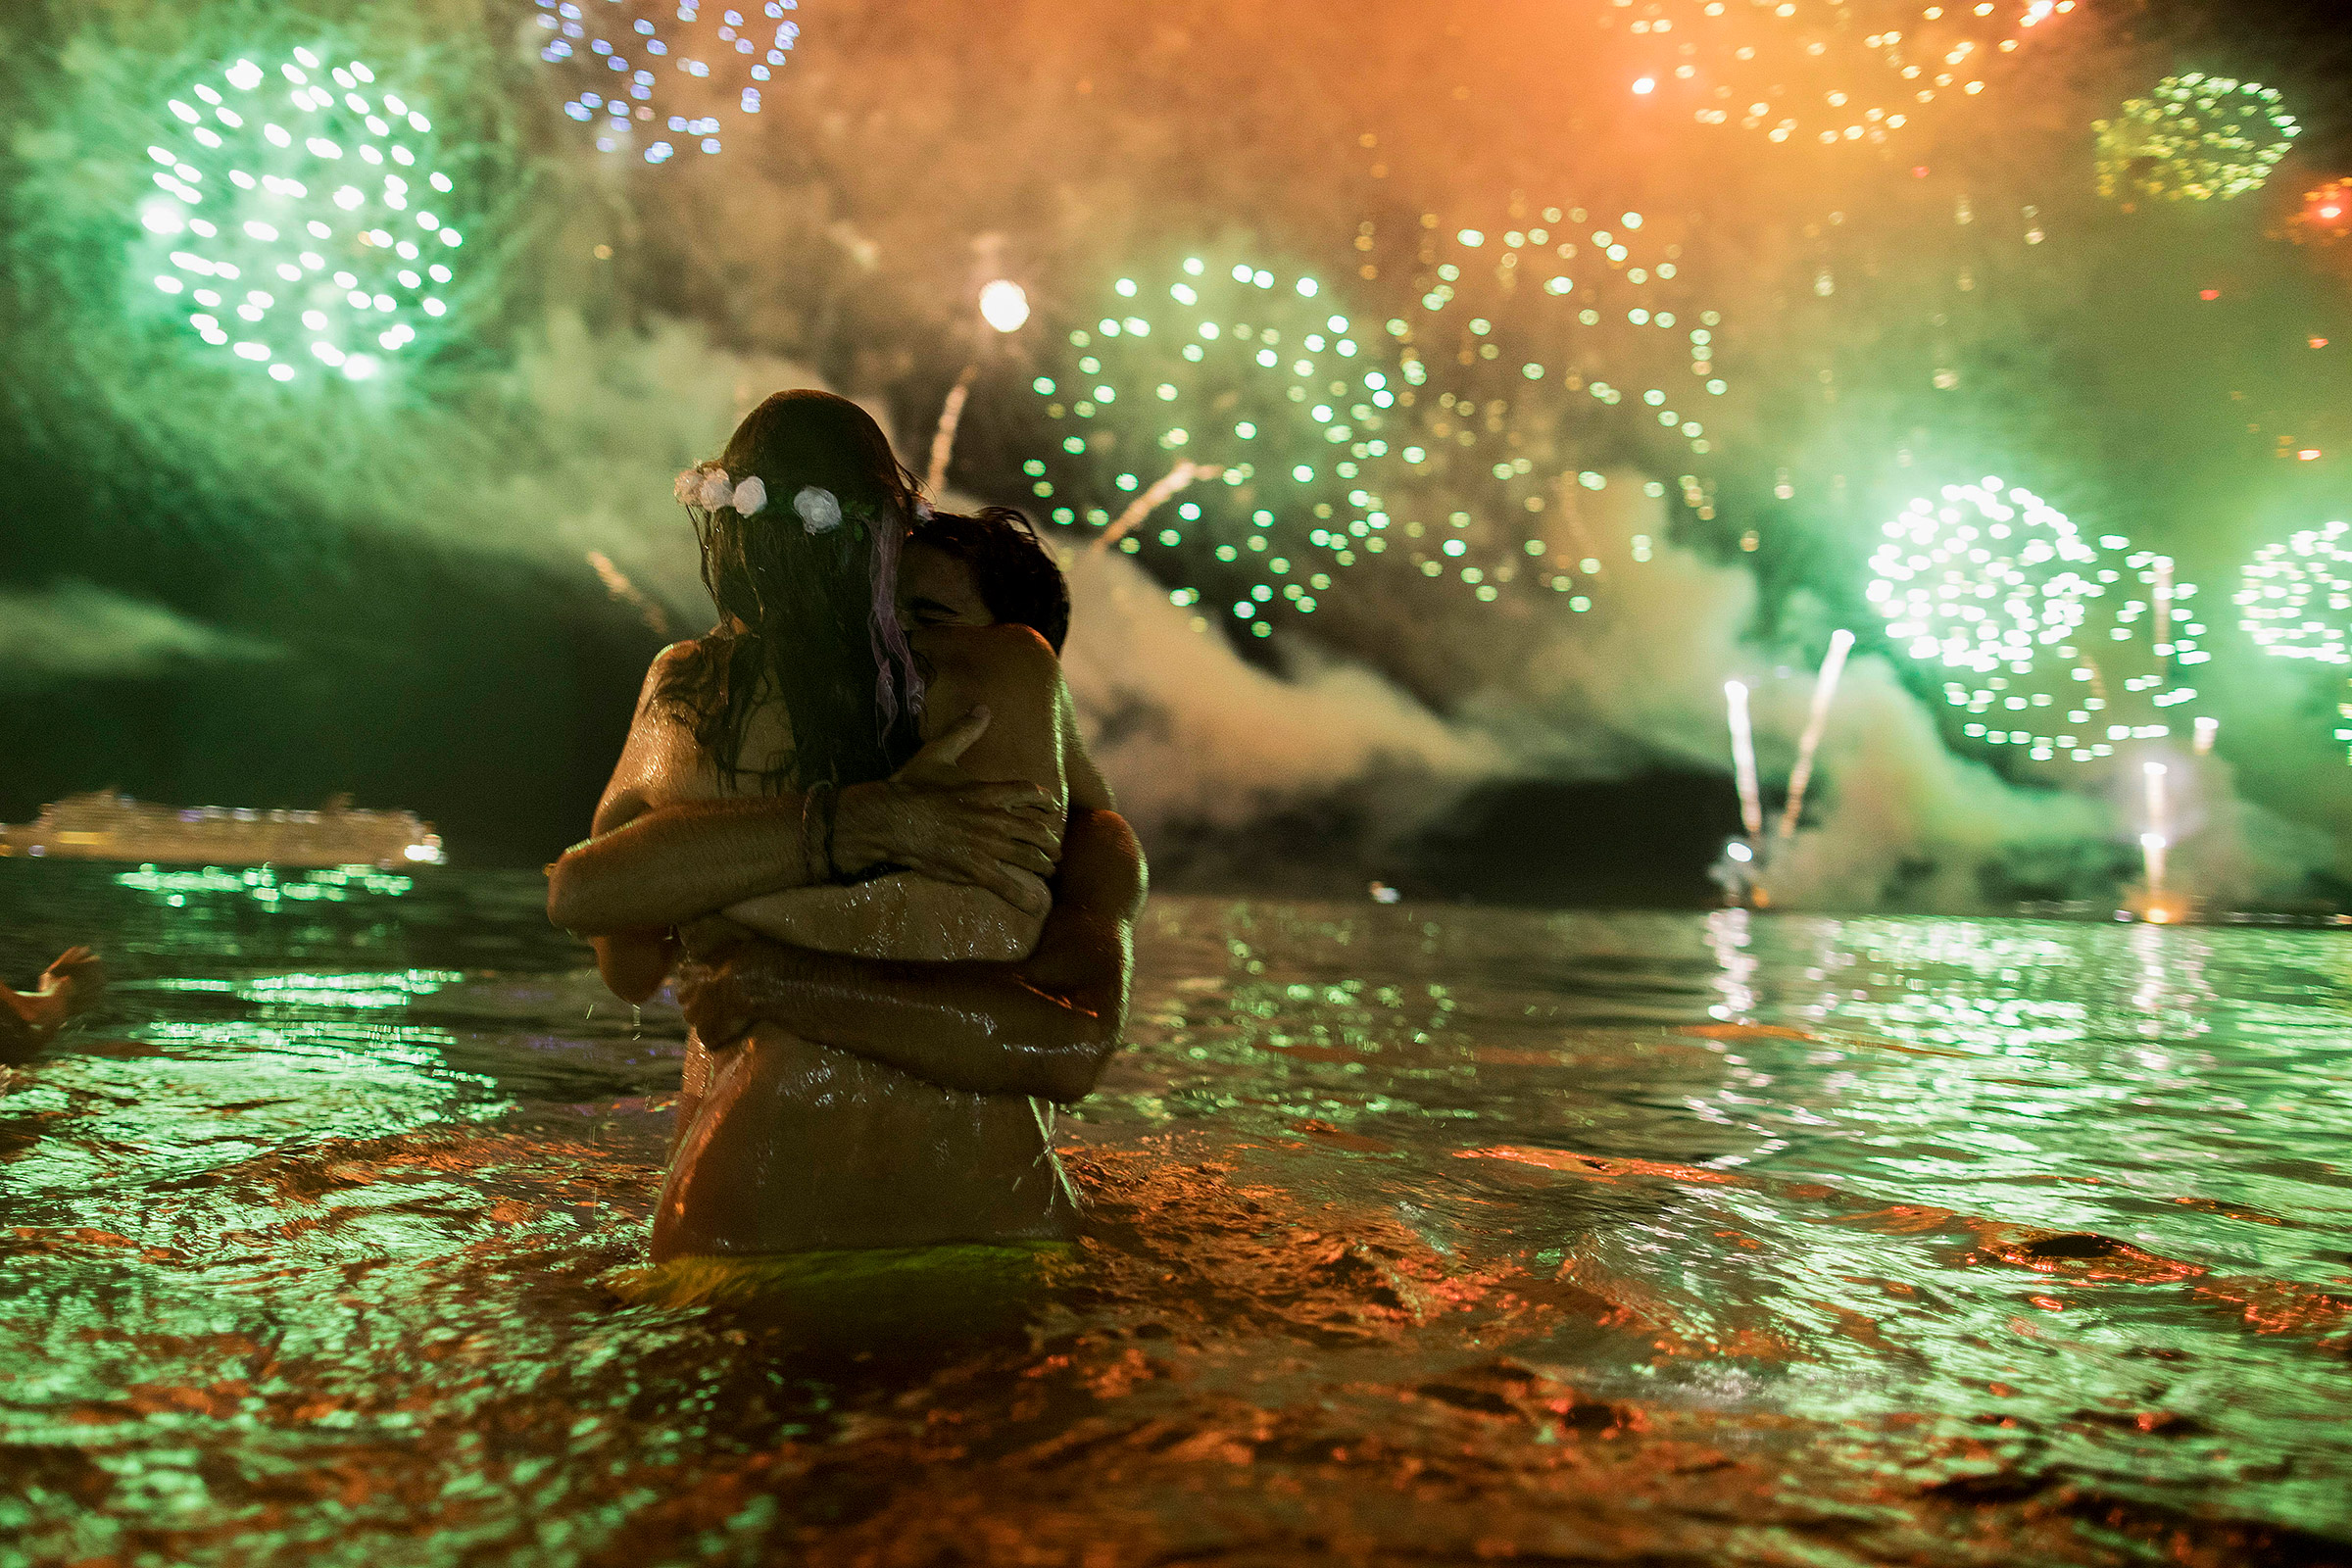 А вот так праздновали Новый год в Бразилии. Пара на пляже в Копакабане, Рио-де-Жанейро​
